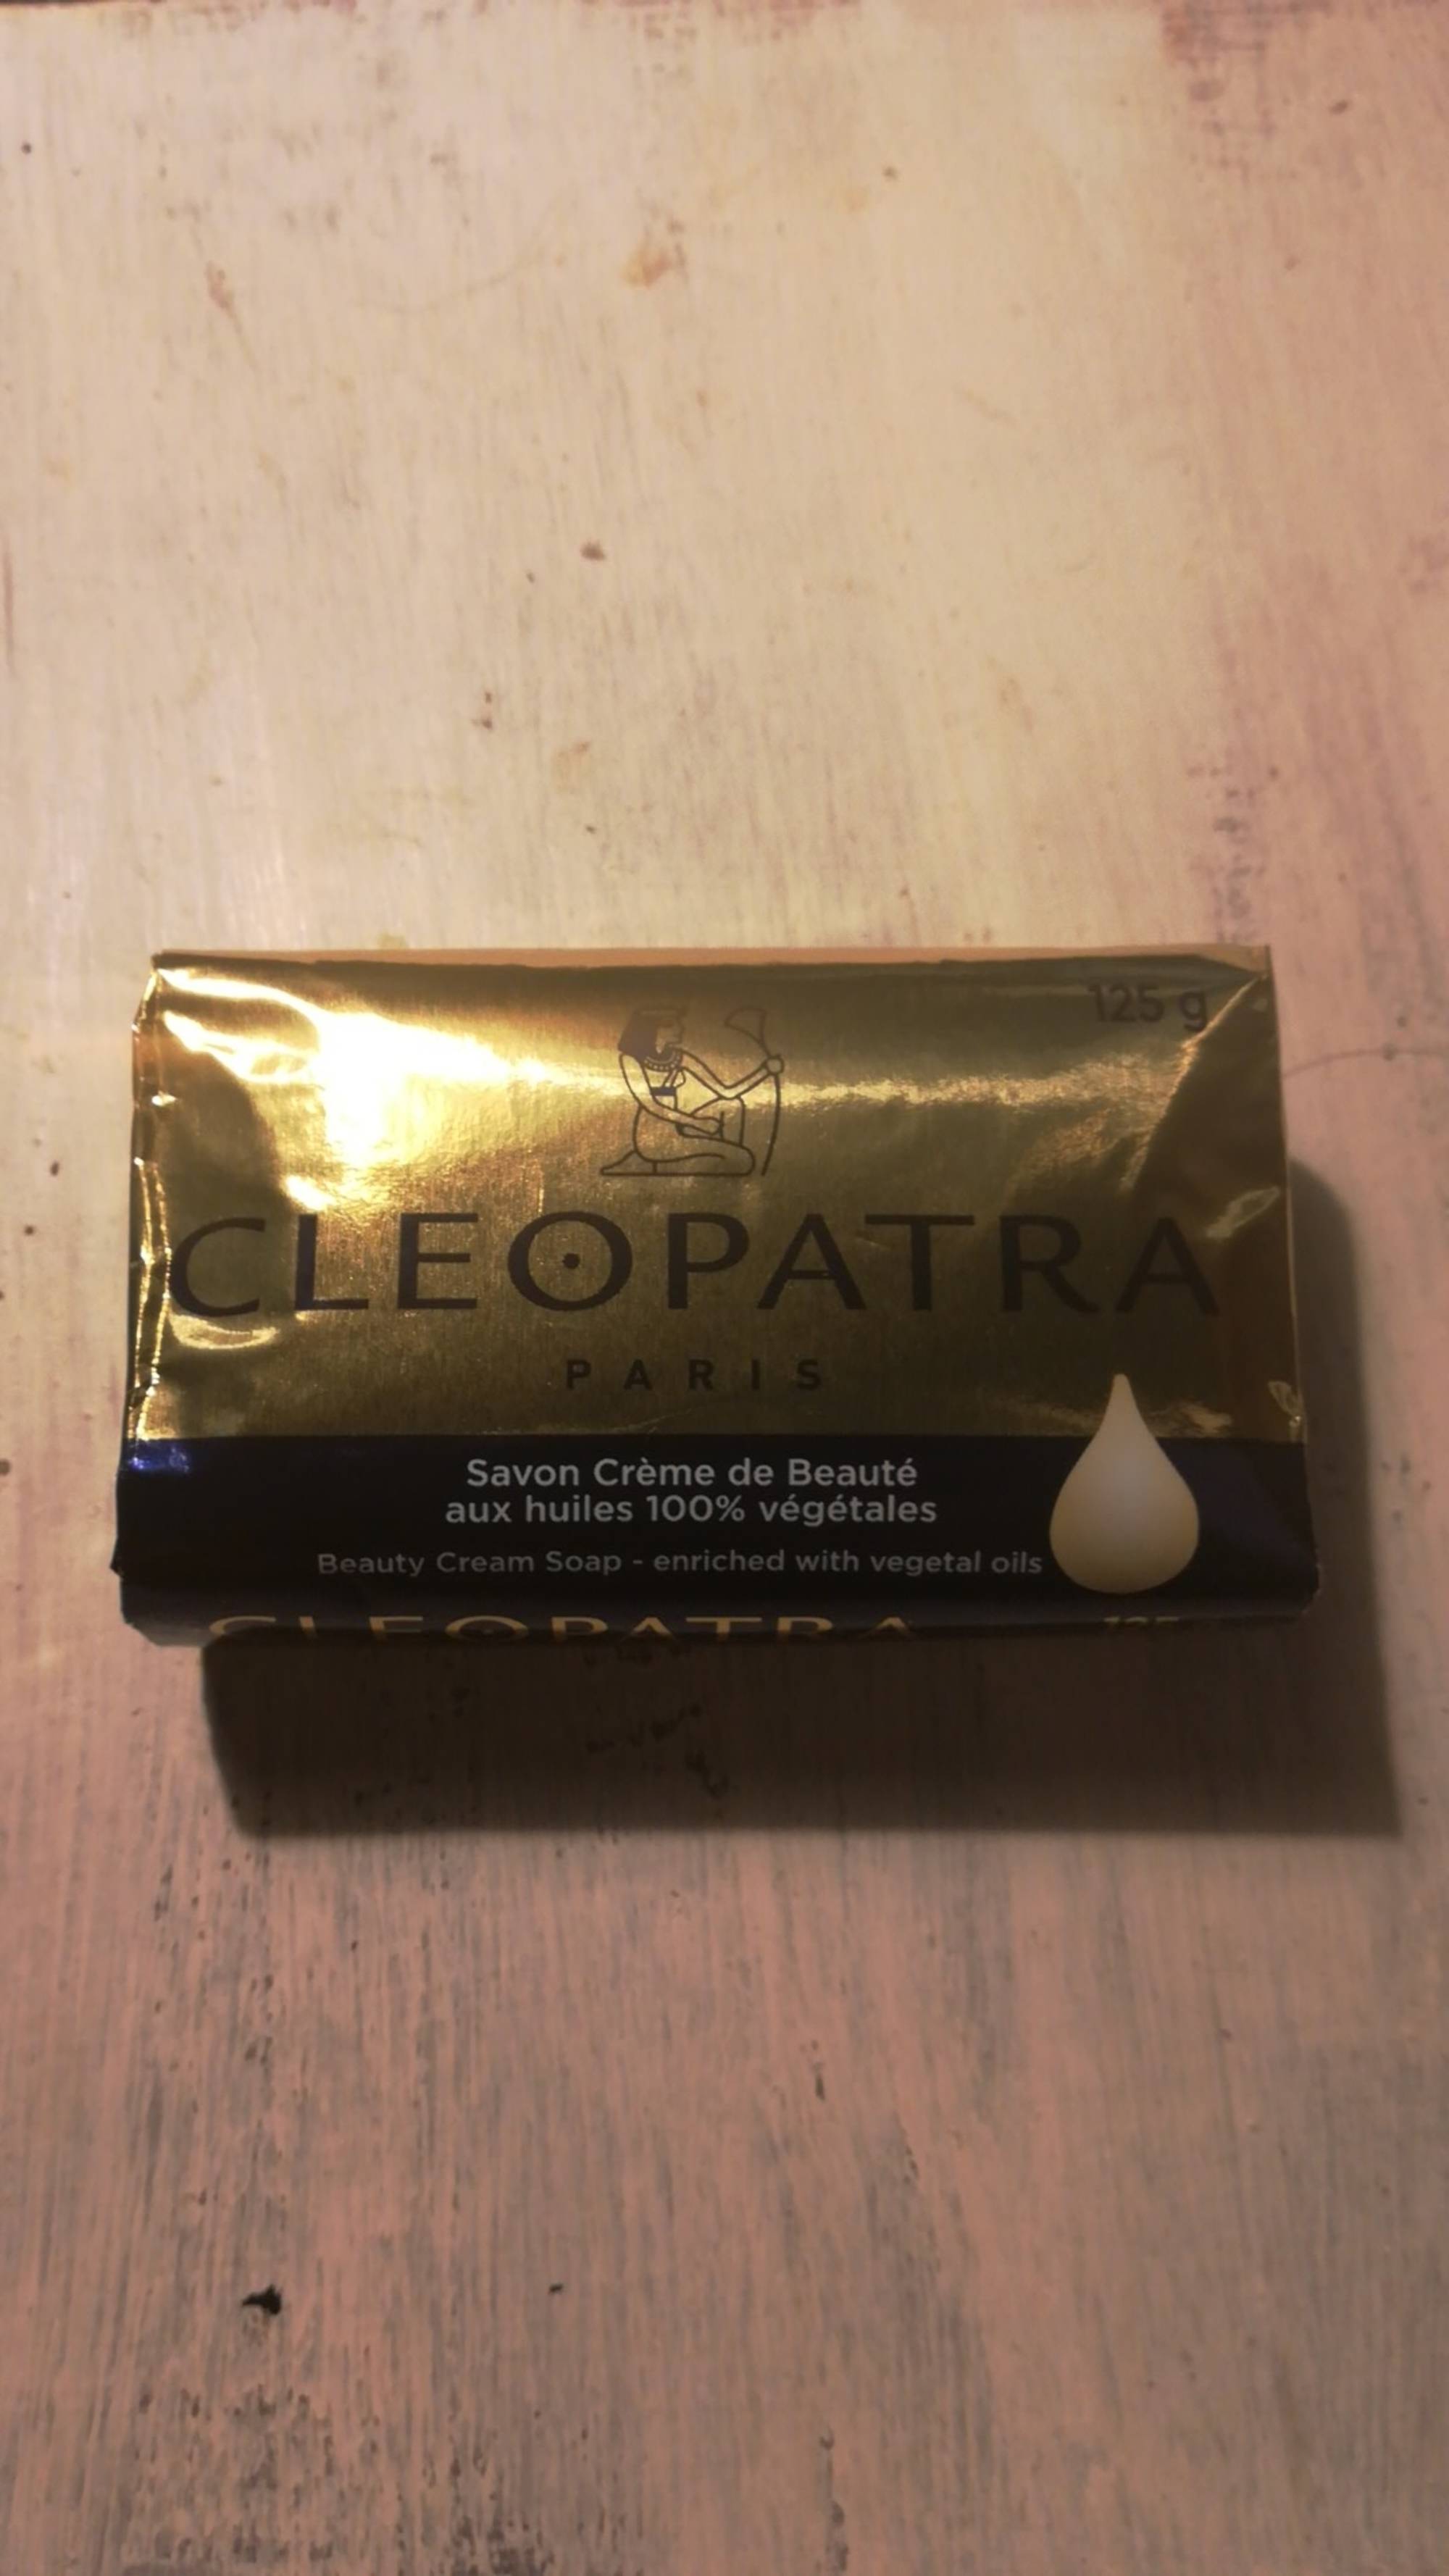 CLÉOPATRA - Savon crème de beauté 